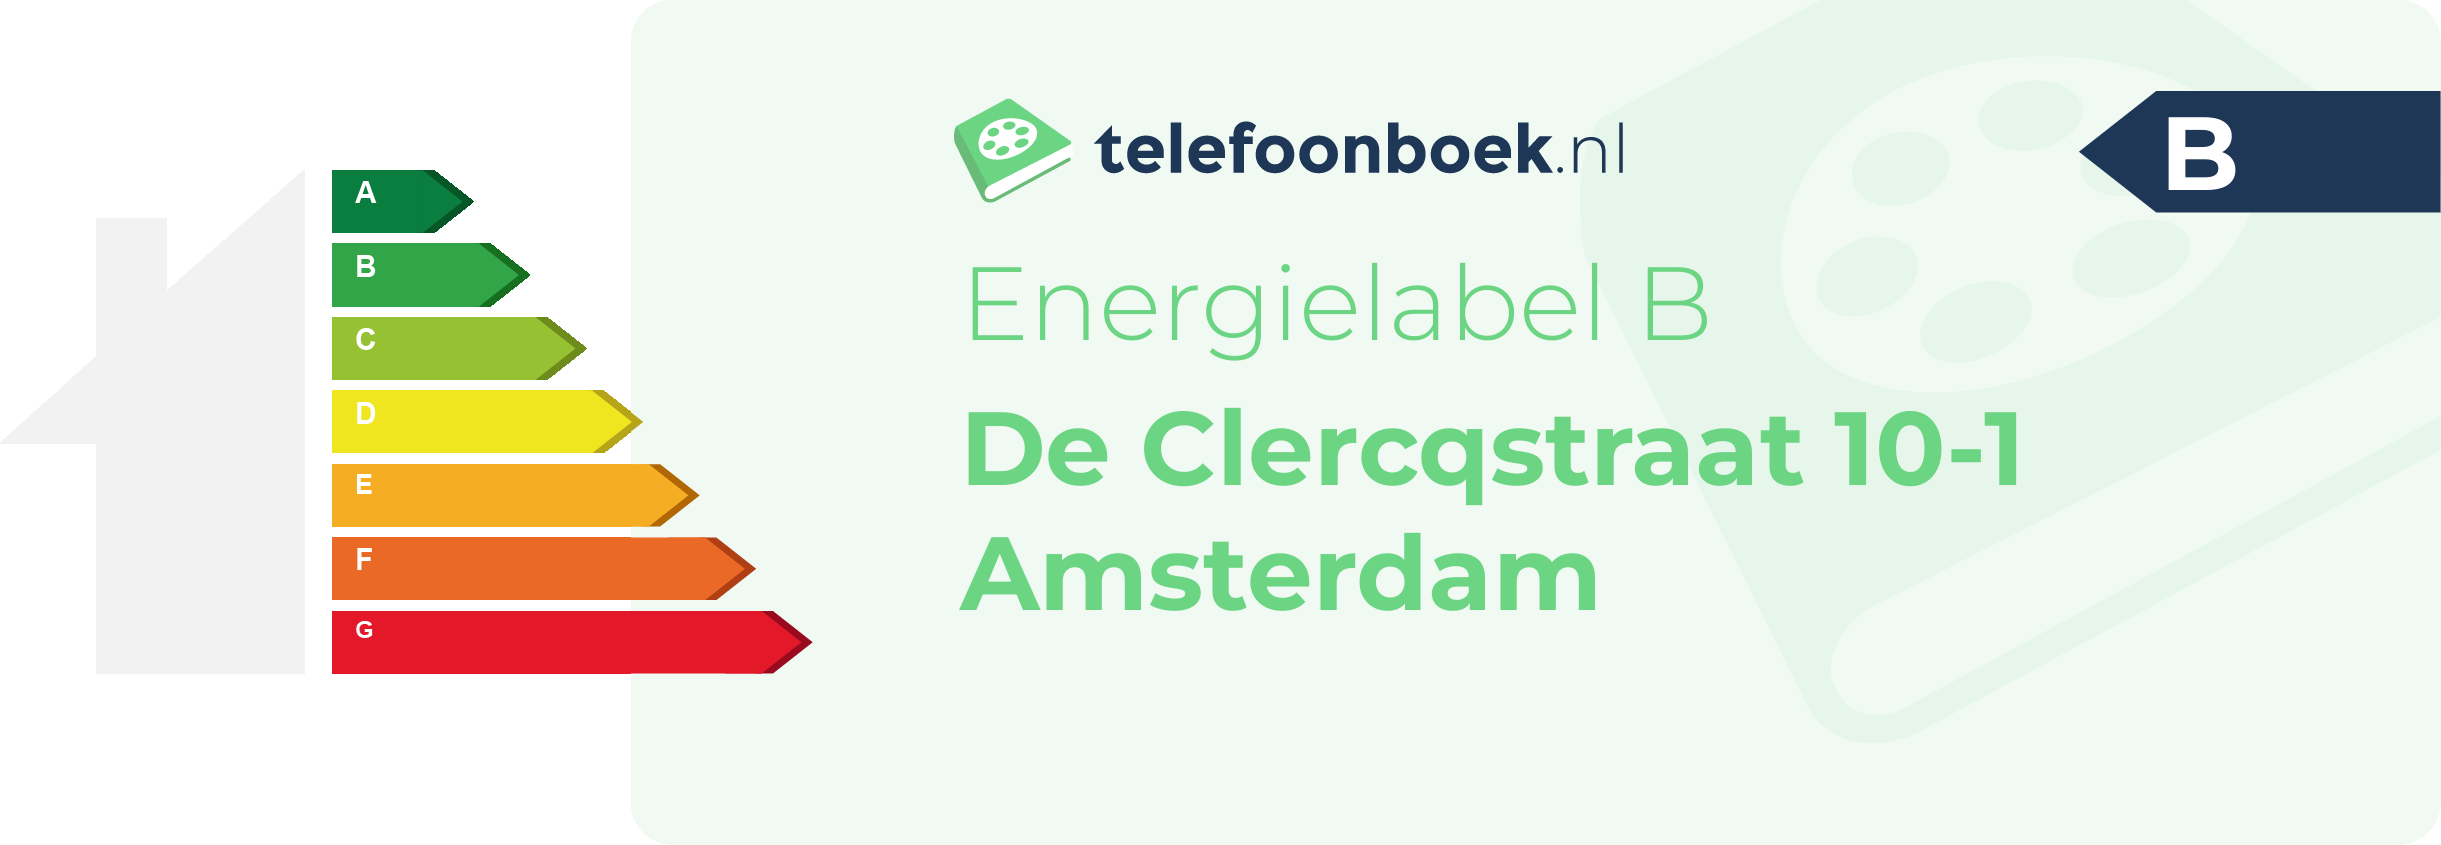 Energielabel De Clercqstraat 10-1 Amsterdam